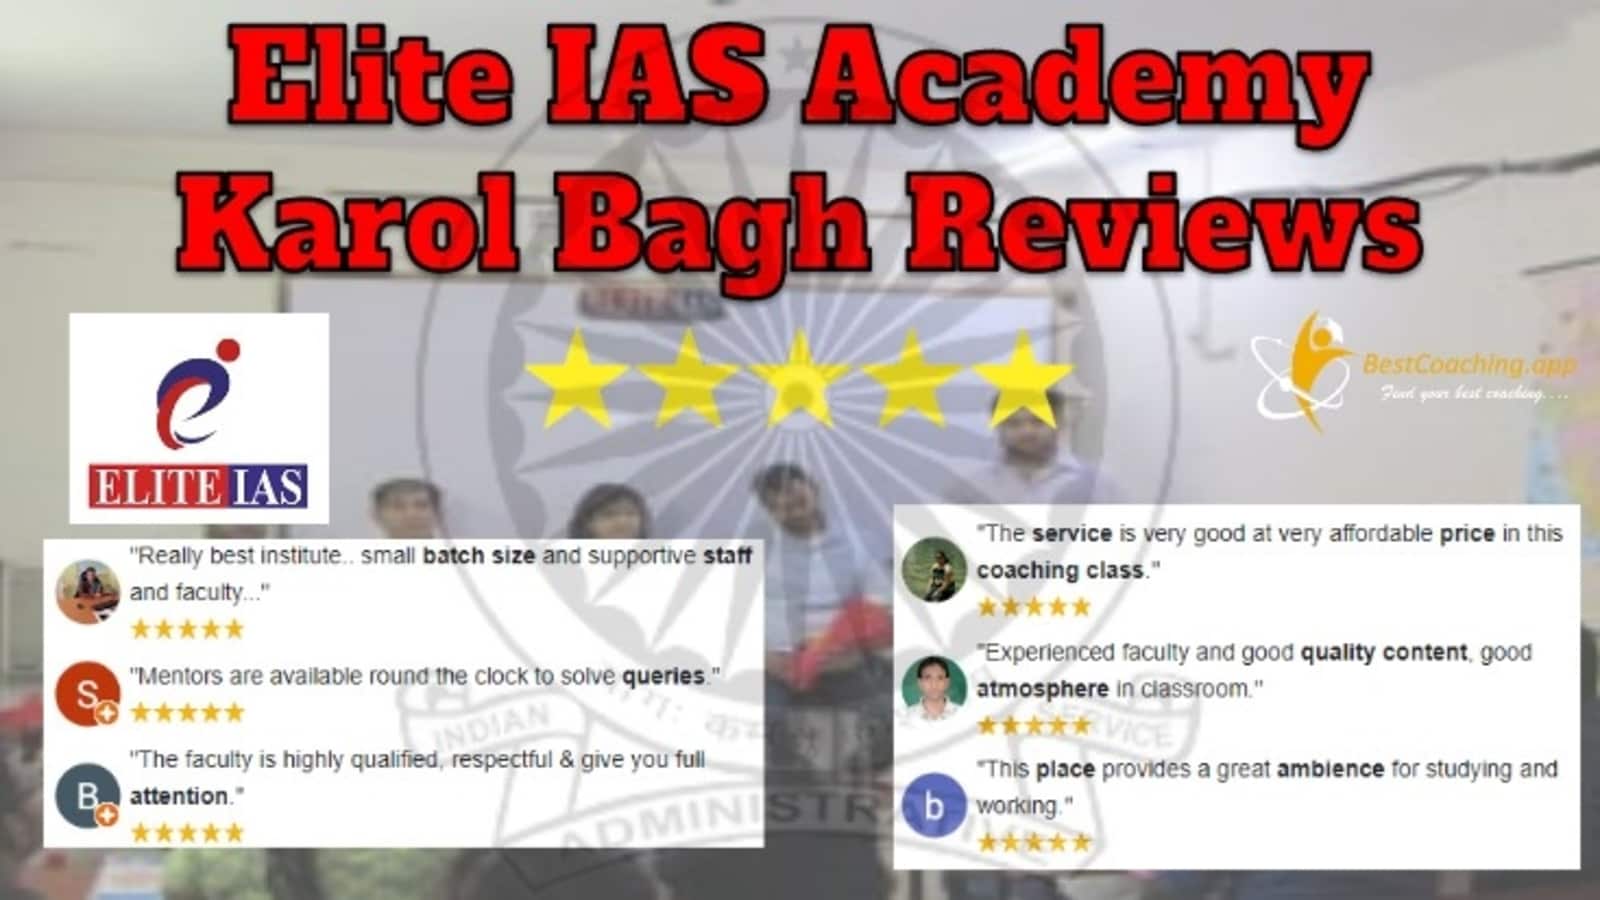 Elite IAS Academy in Karol Bagh Reviews